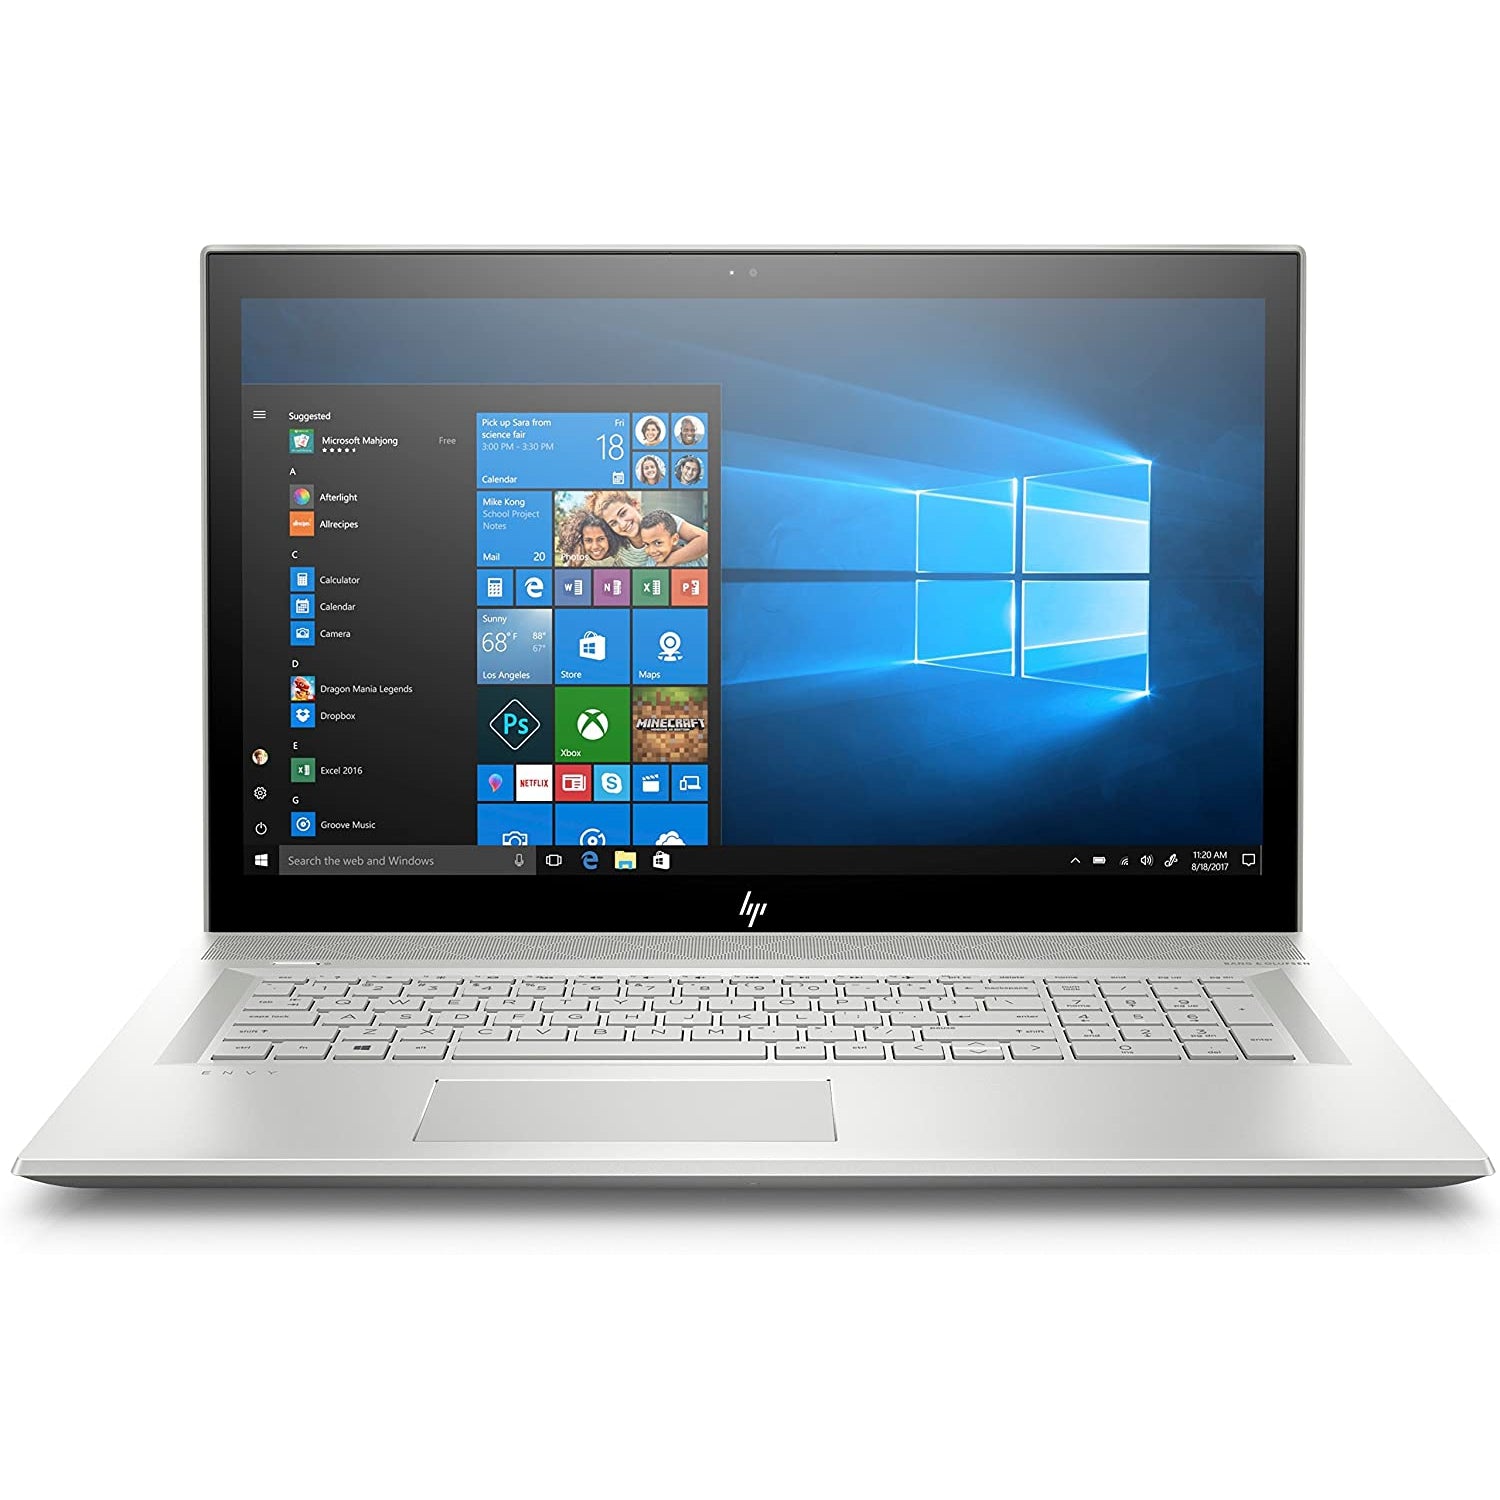 HP ENVY 17-bw0503na, 17.3" Laptop, Intel Core i7-8550U, 8GB RAM, 1TB HDD, NVIDIA GeForce MX150, Win 10, 4BA03EA#ABU - Silver